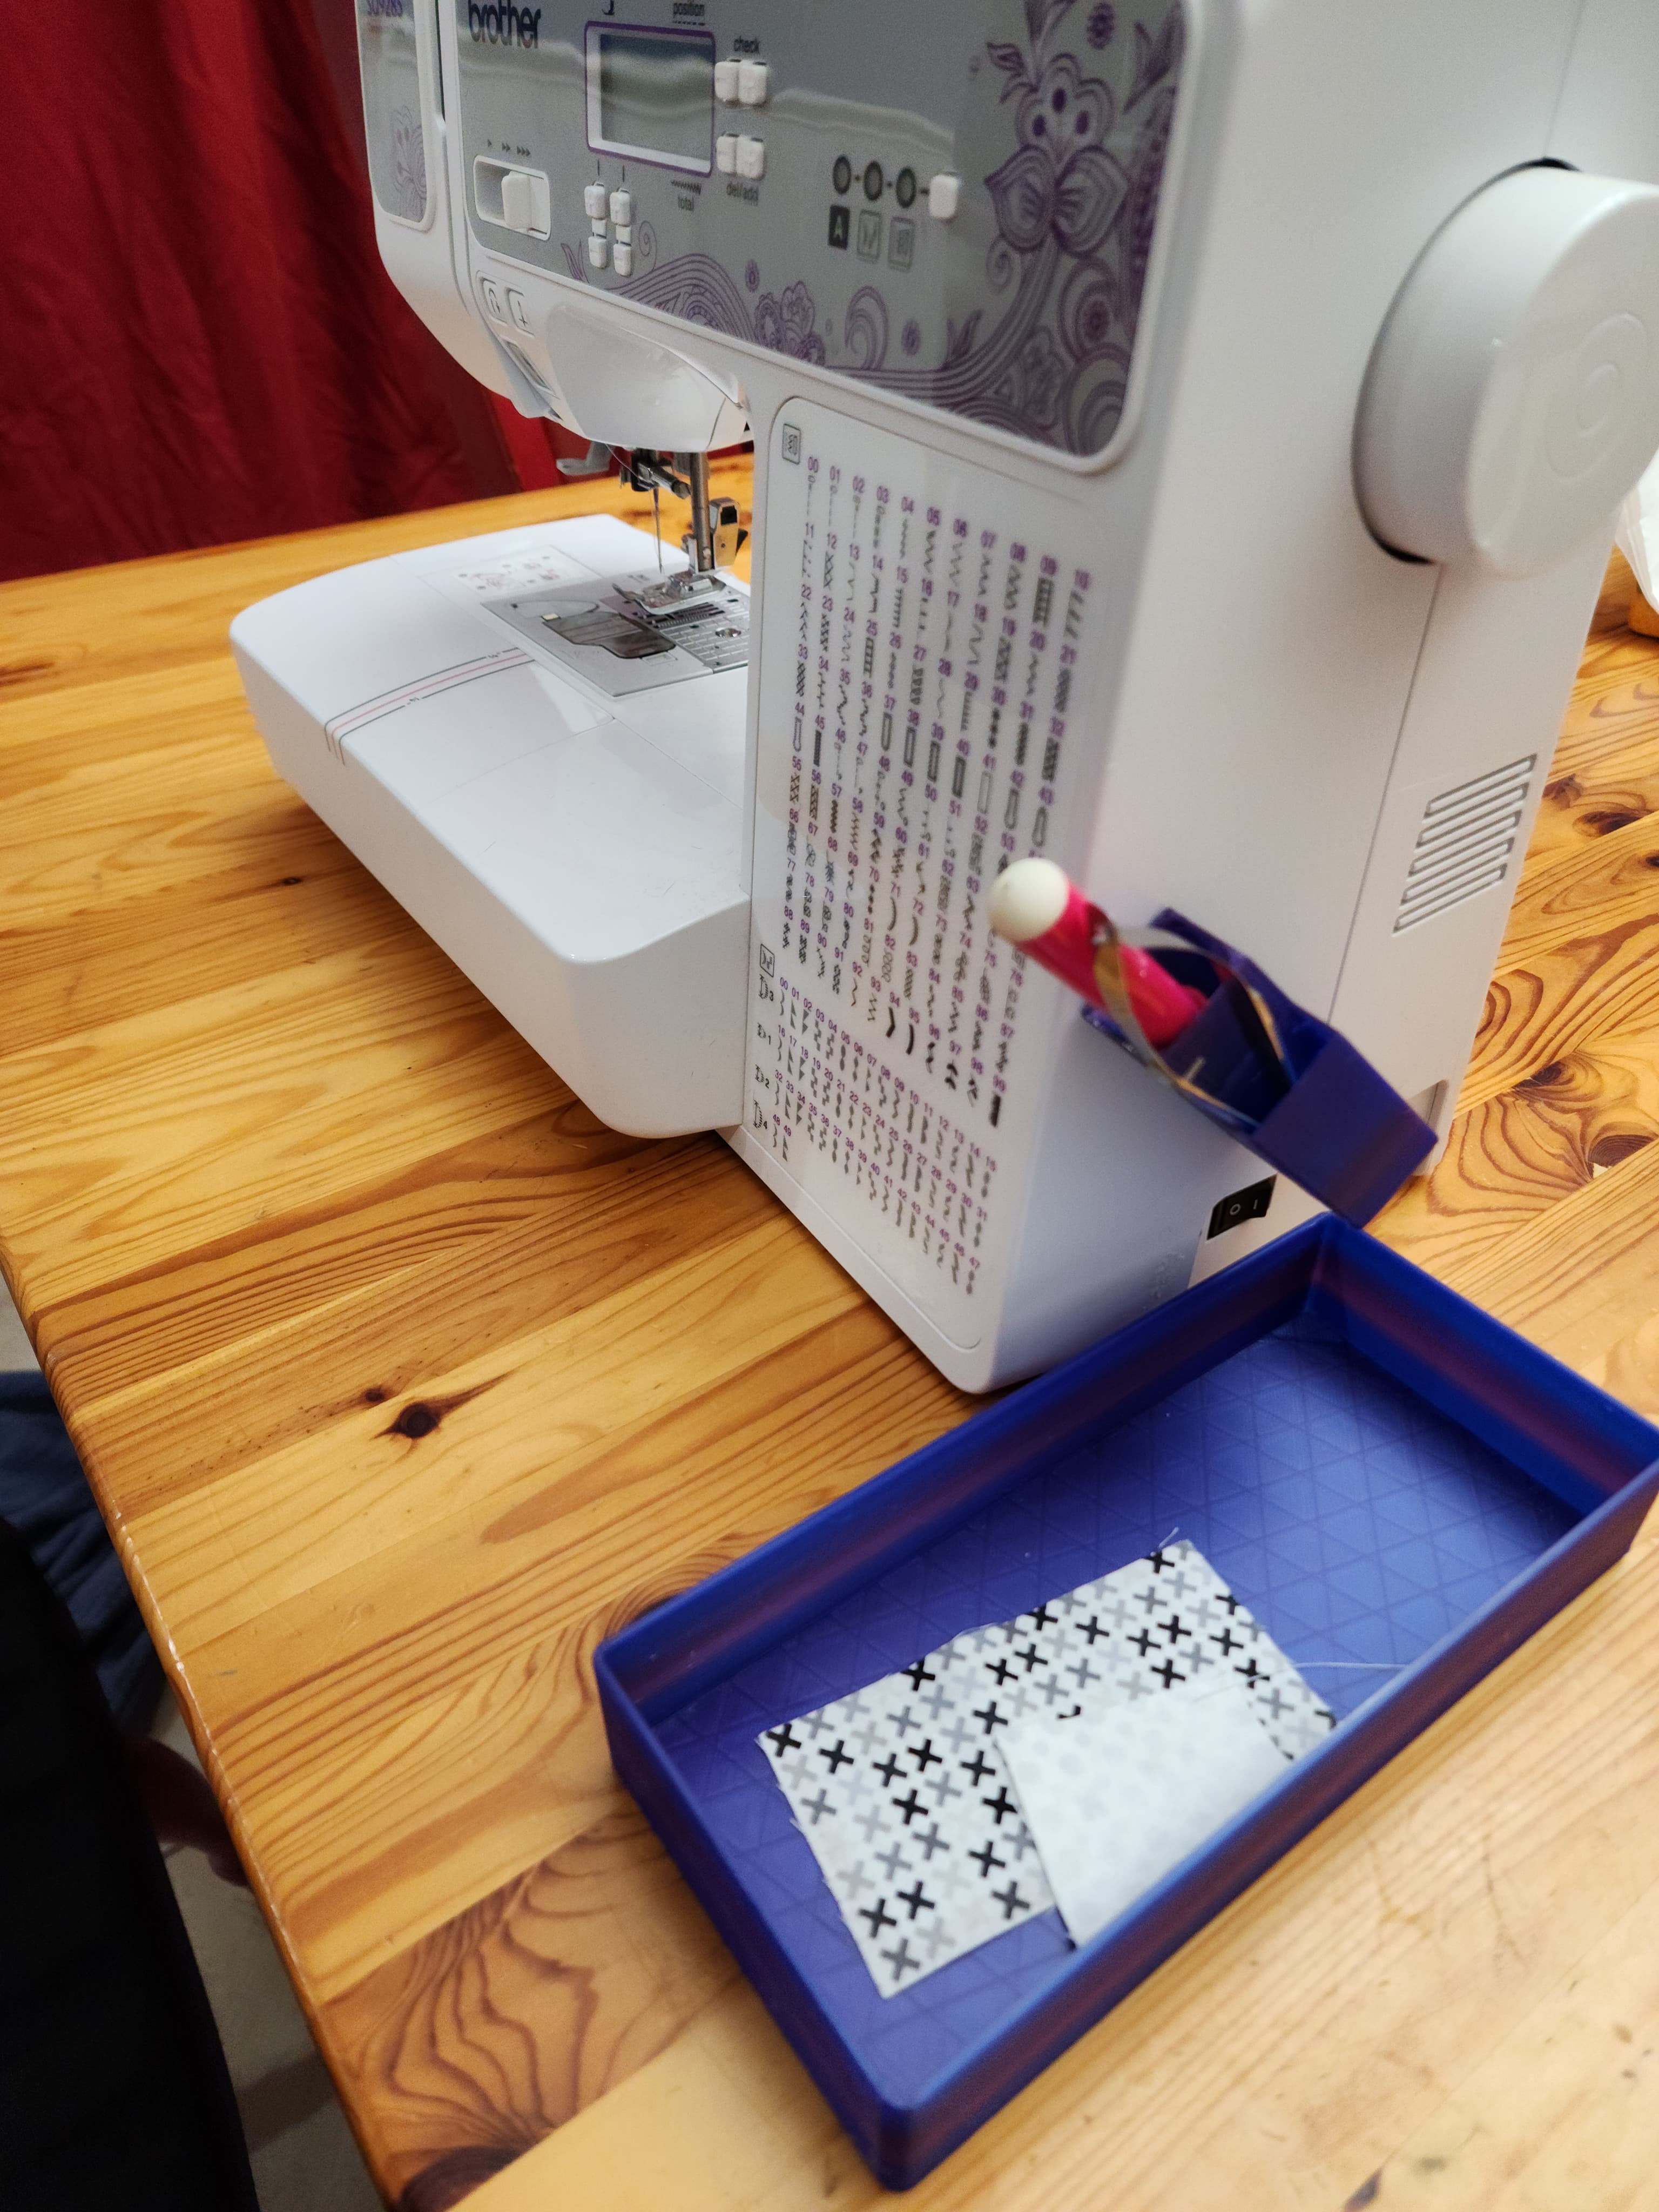 Sewing Machine Tool Caddy and Scrap bin